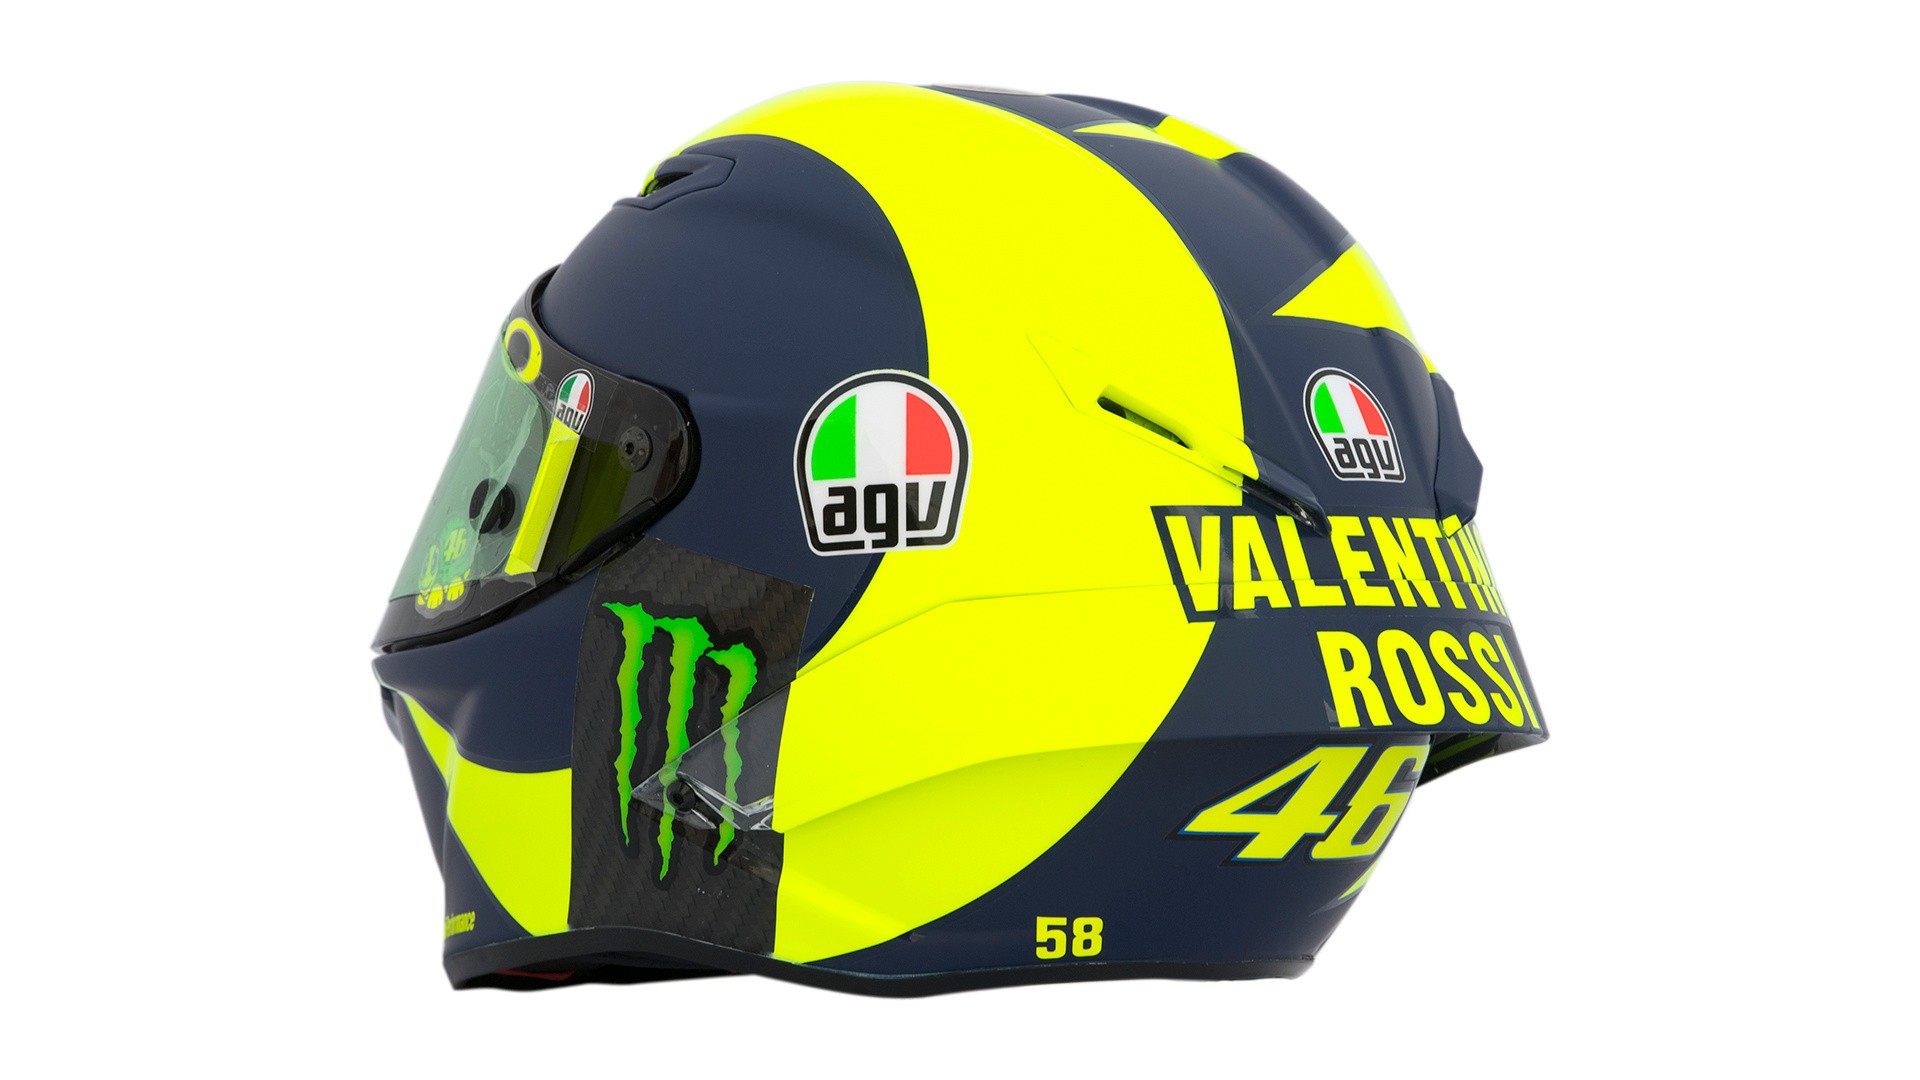 Valentino Rossi's 2018 AGV Pista GP R Helmet Unveiled In Qatar